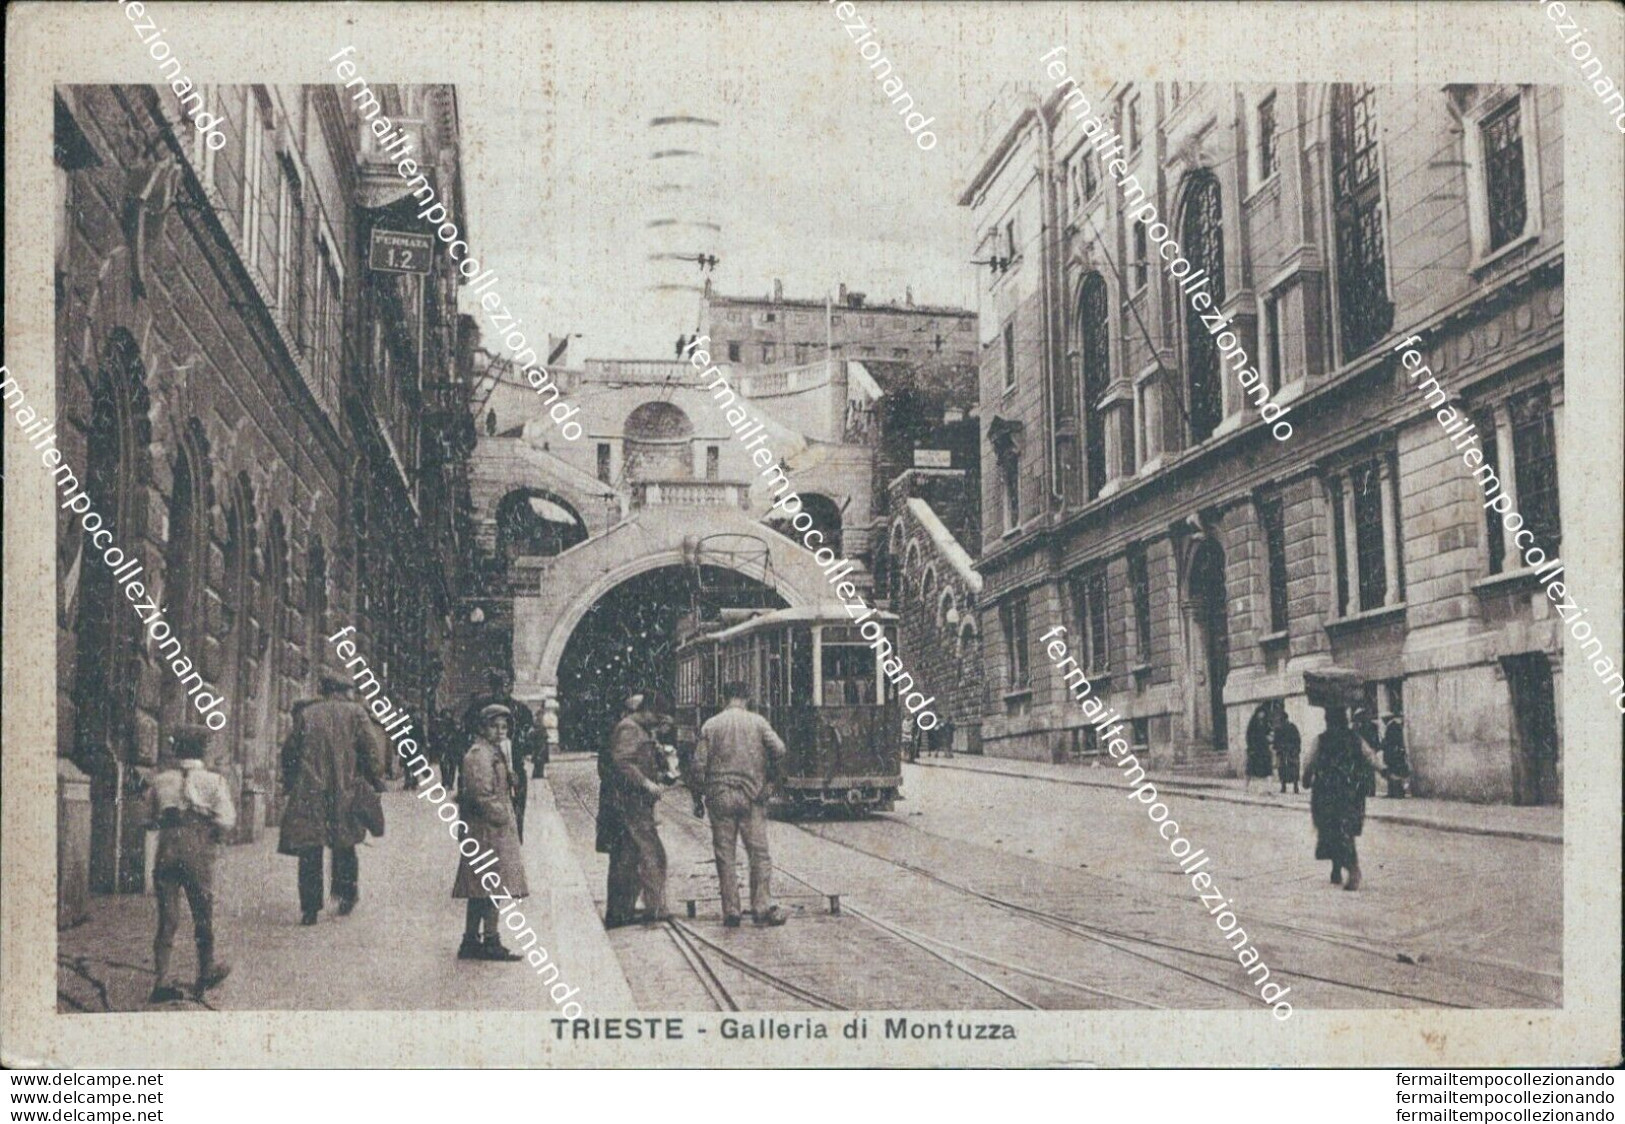 Bc65 Cartolina Trieste Galleria Di Montuzza Tram 1932 - Trieste